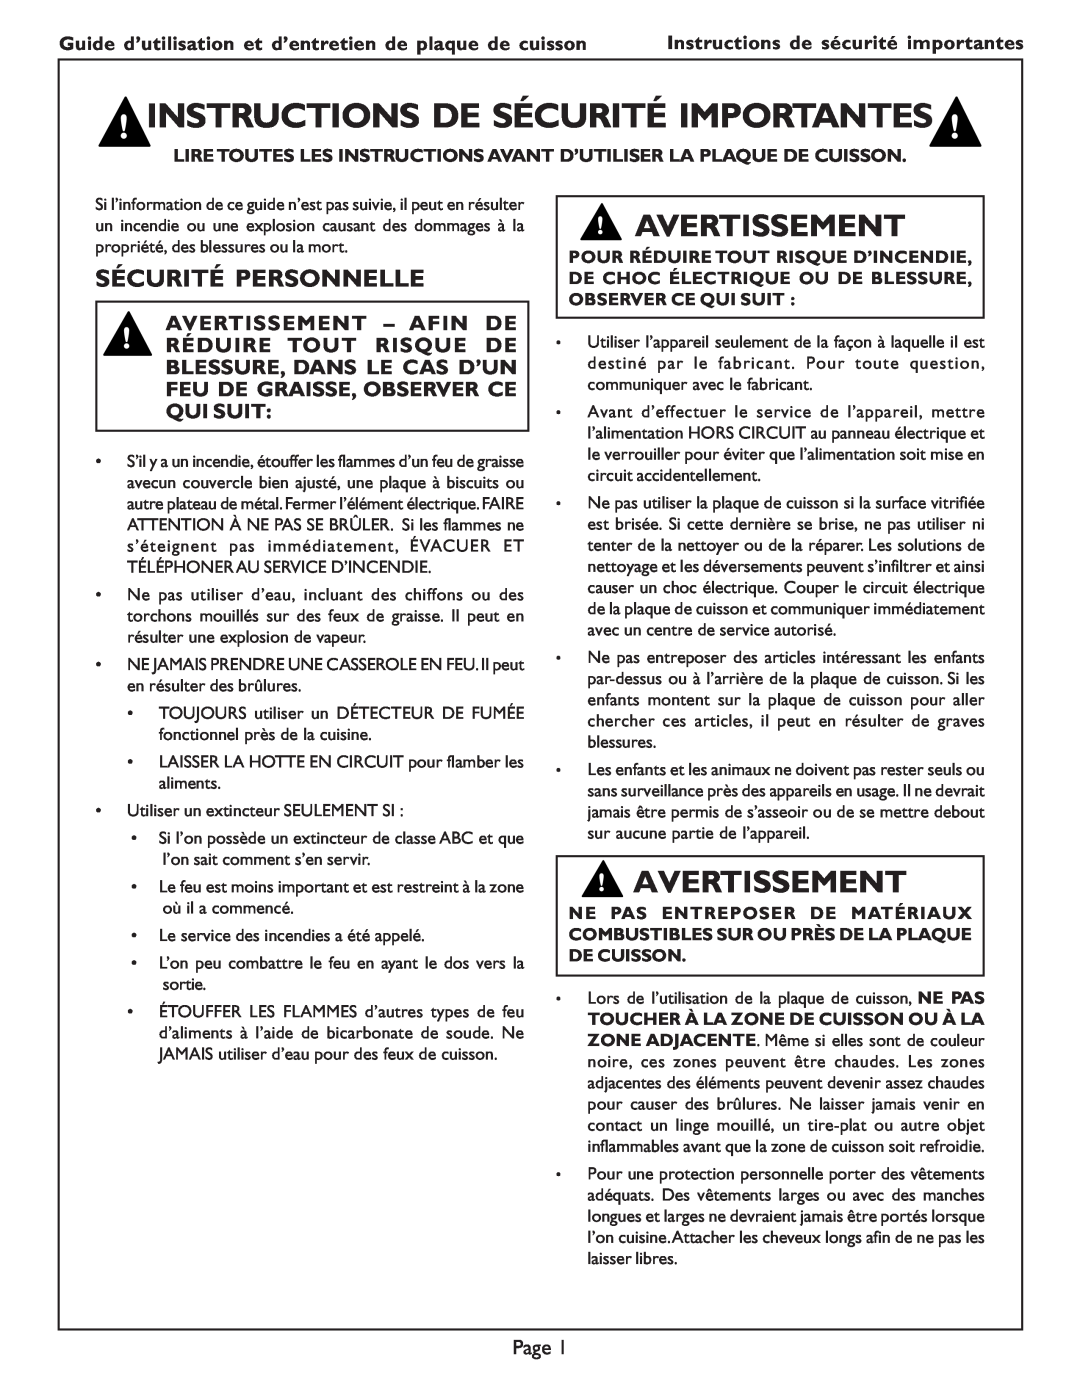 Bosch Appliances NES 730 UC Instructions De Sécurité Importantes, Avertissement, Sécurité Personnelle, Qui Suit, Page 